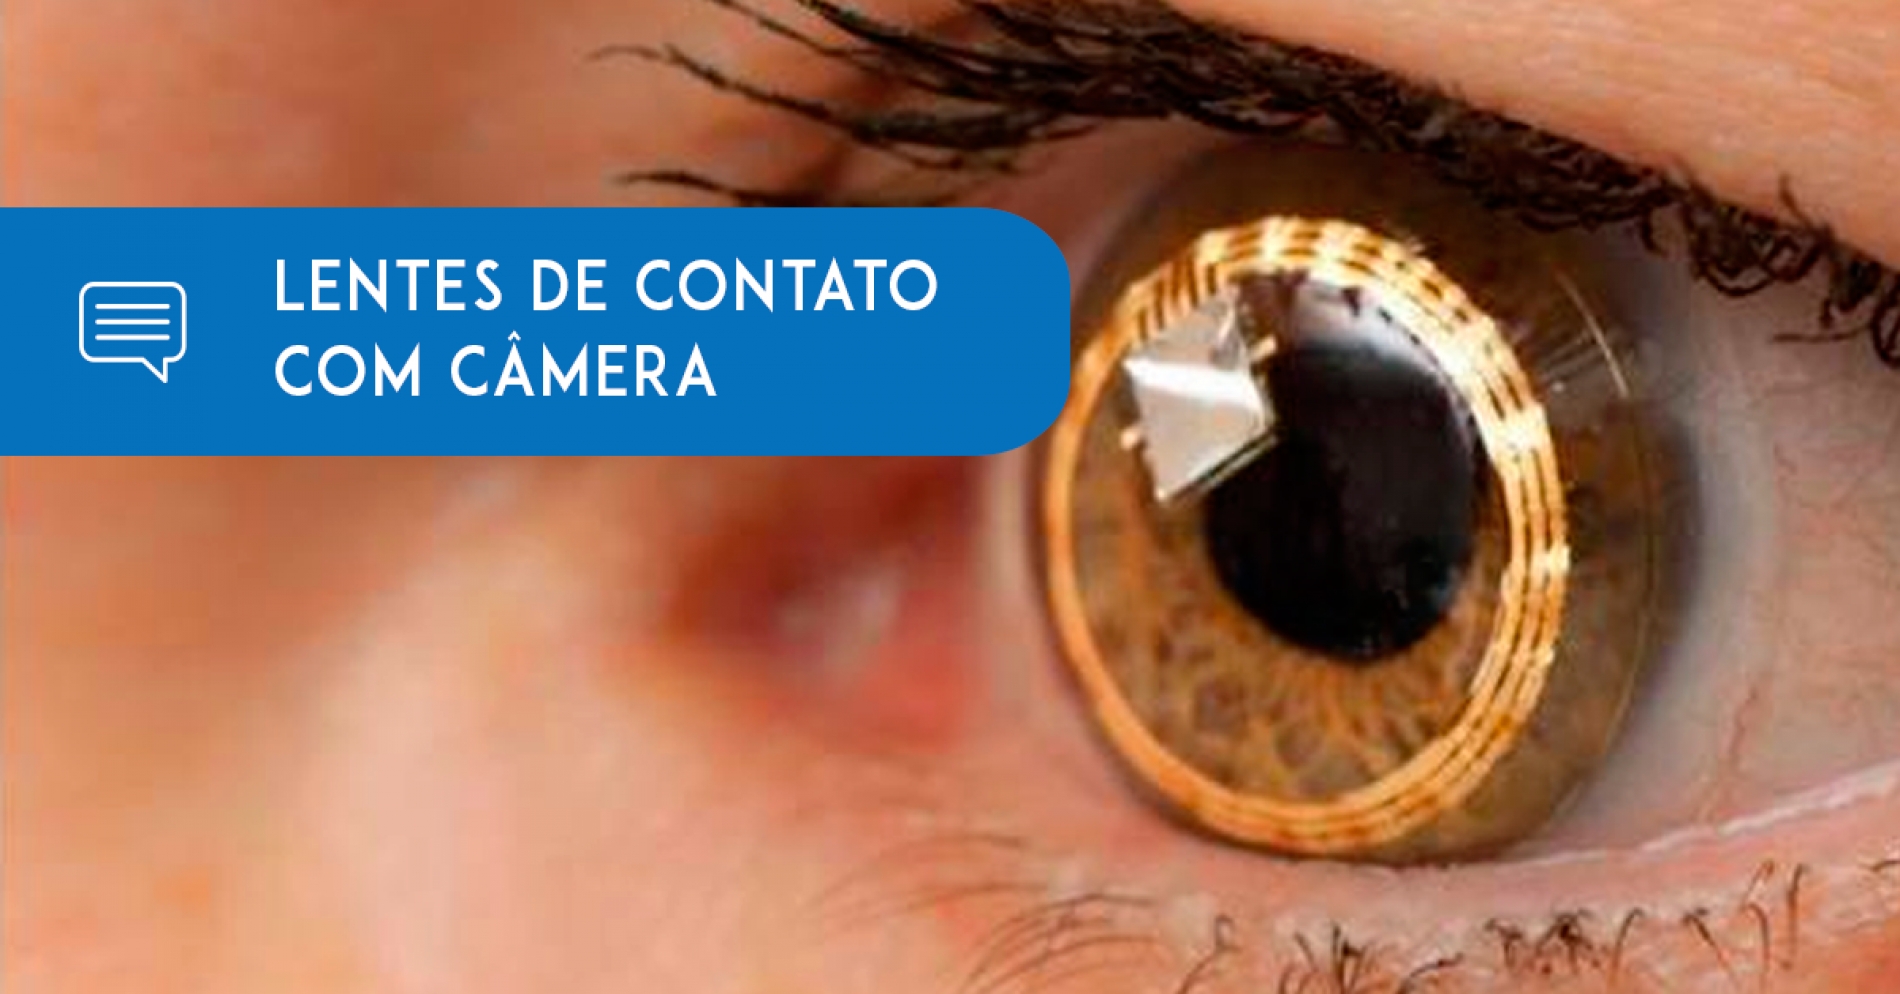 Samsung prepara lentes de contato com câmera acoplada - Eduardo Paulino